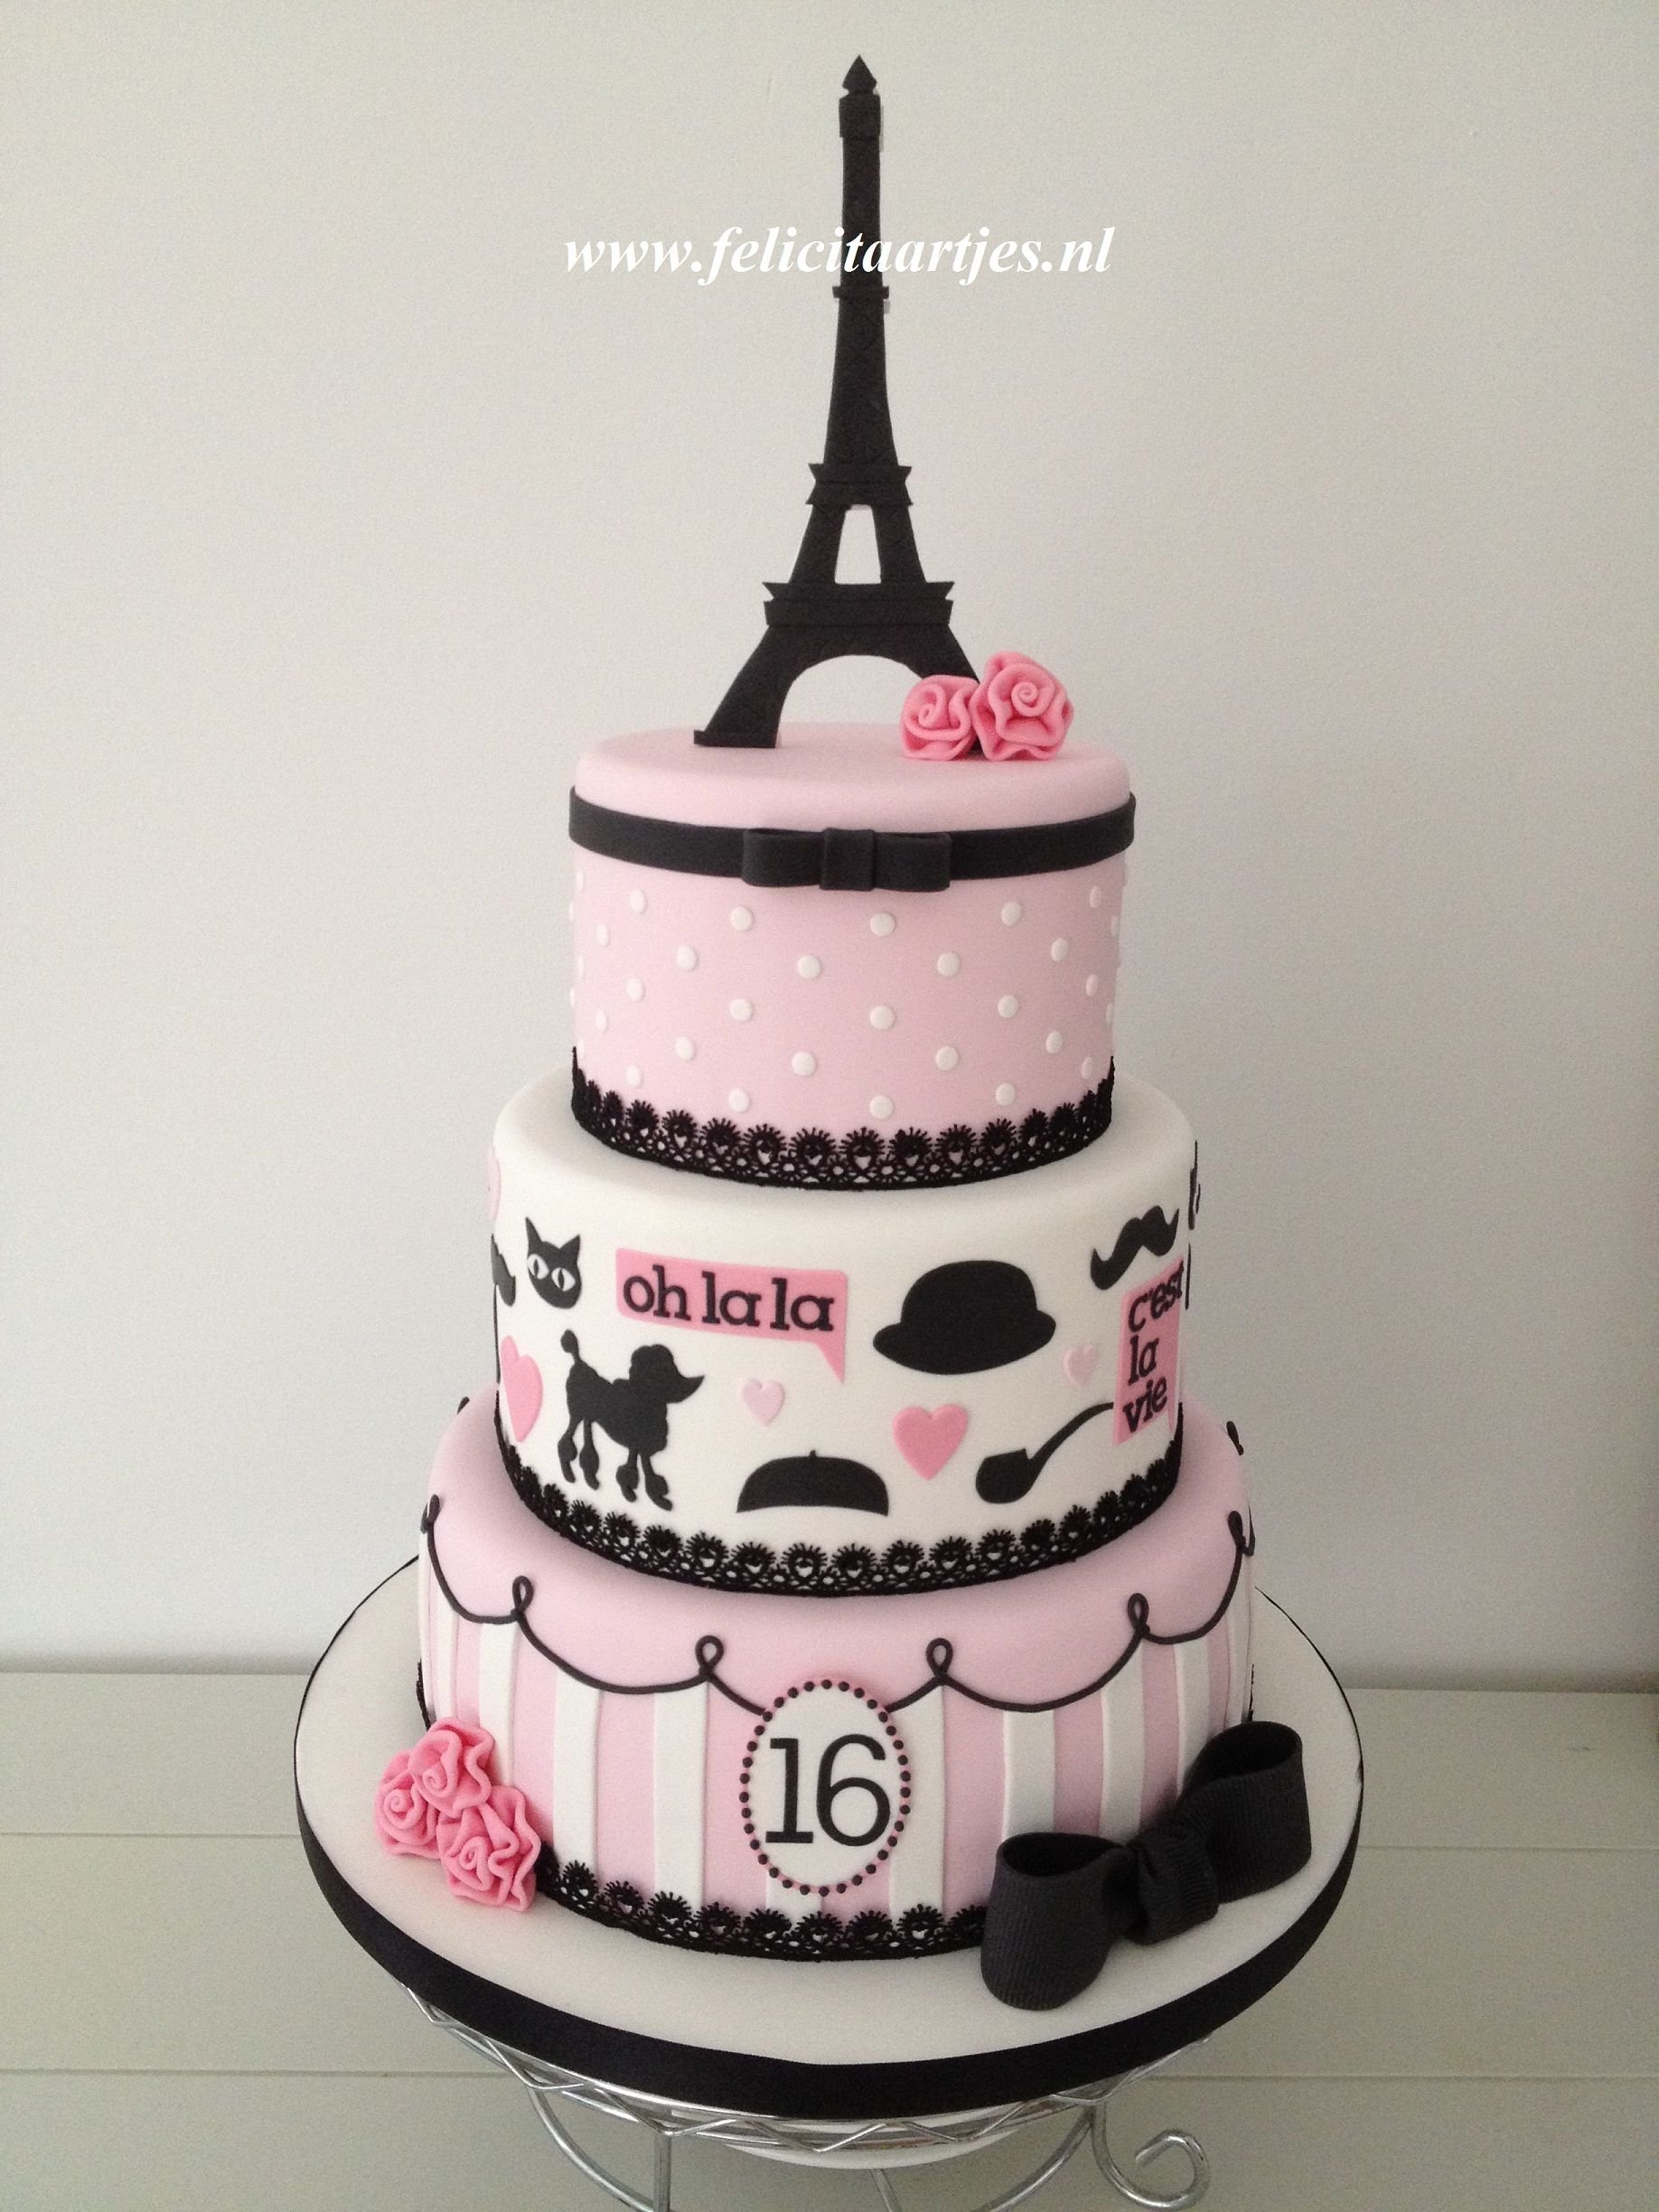 Черно розовый торт. Торт Блэк Пинк торт. Торт в парижском стиле. Торт черный с розовым для девочки. Торт во французском стиле.